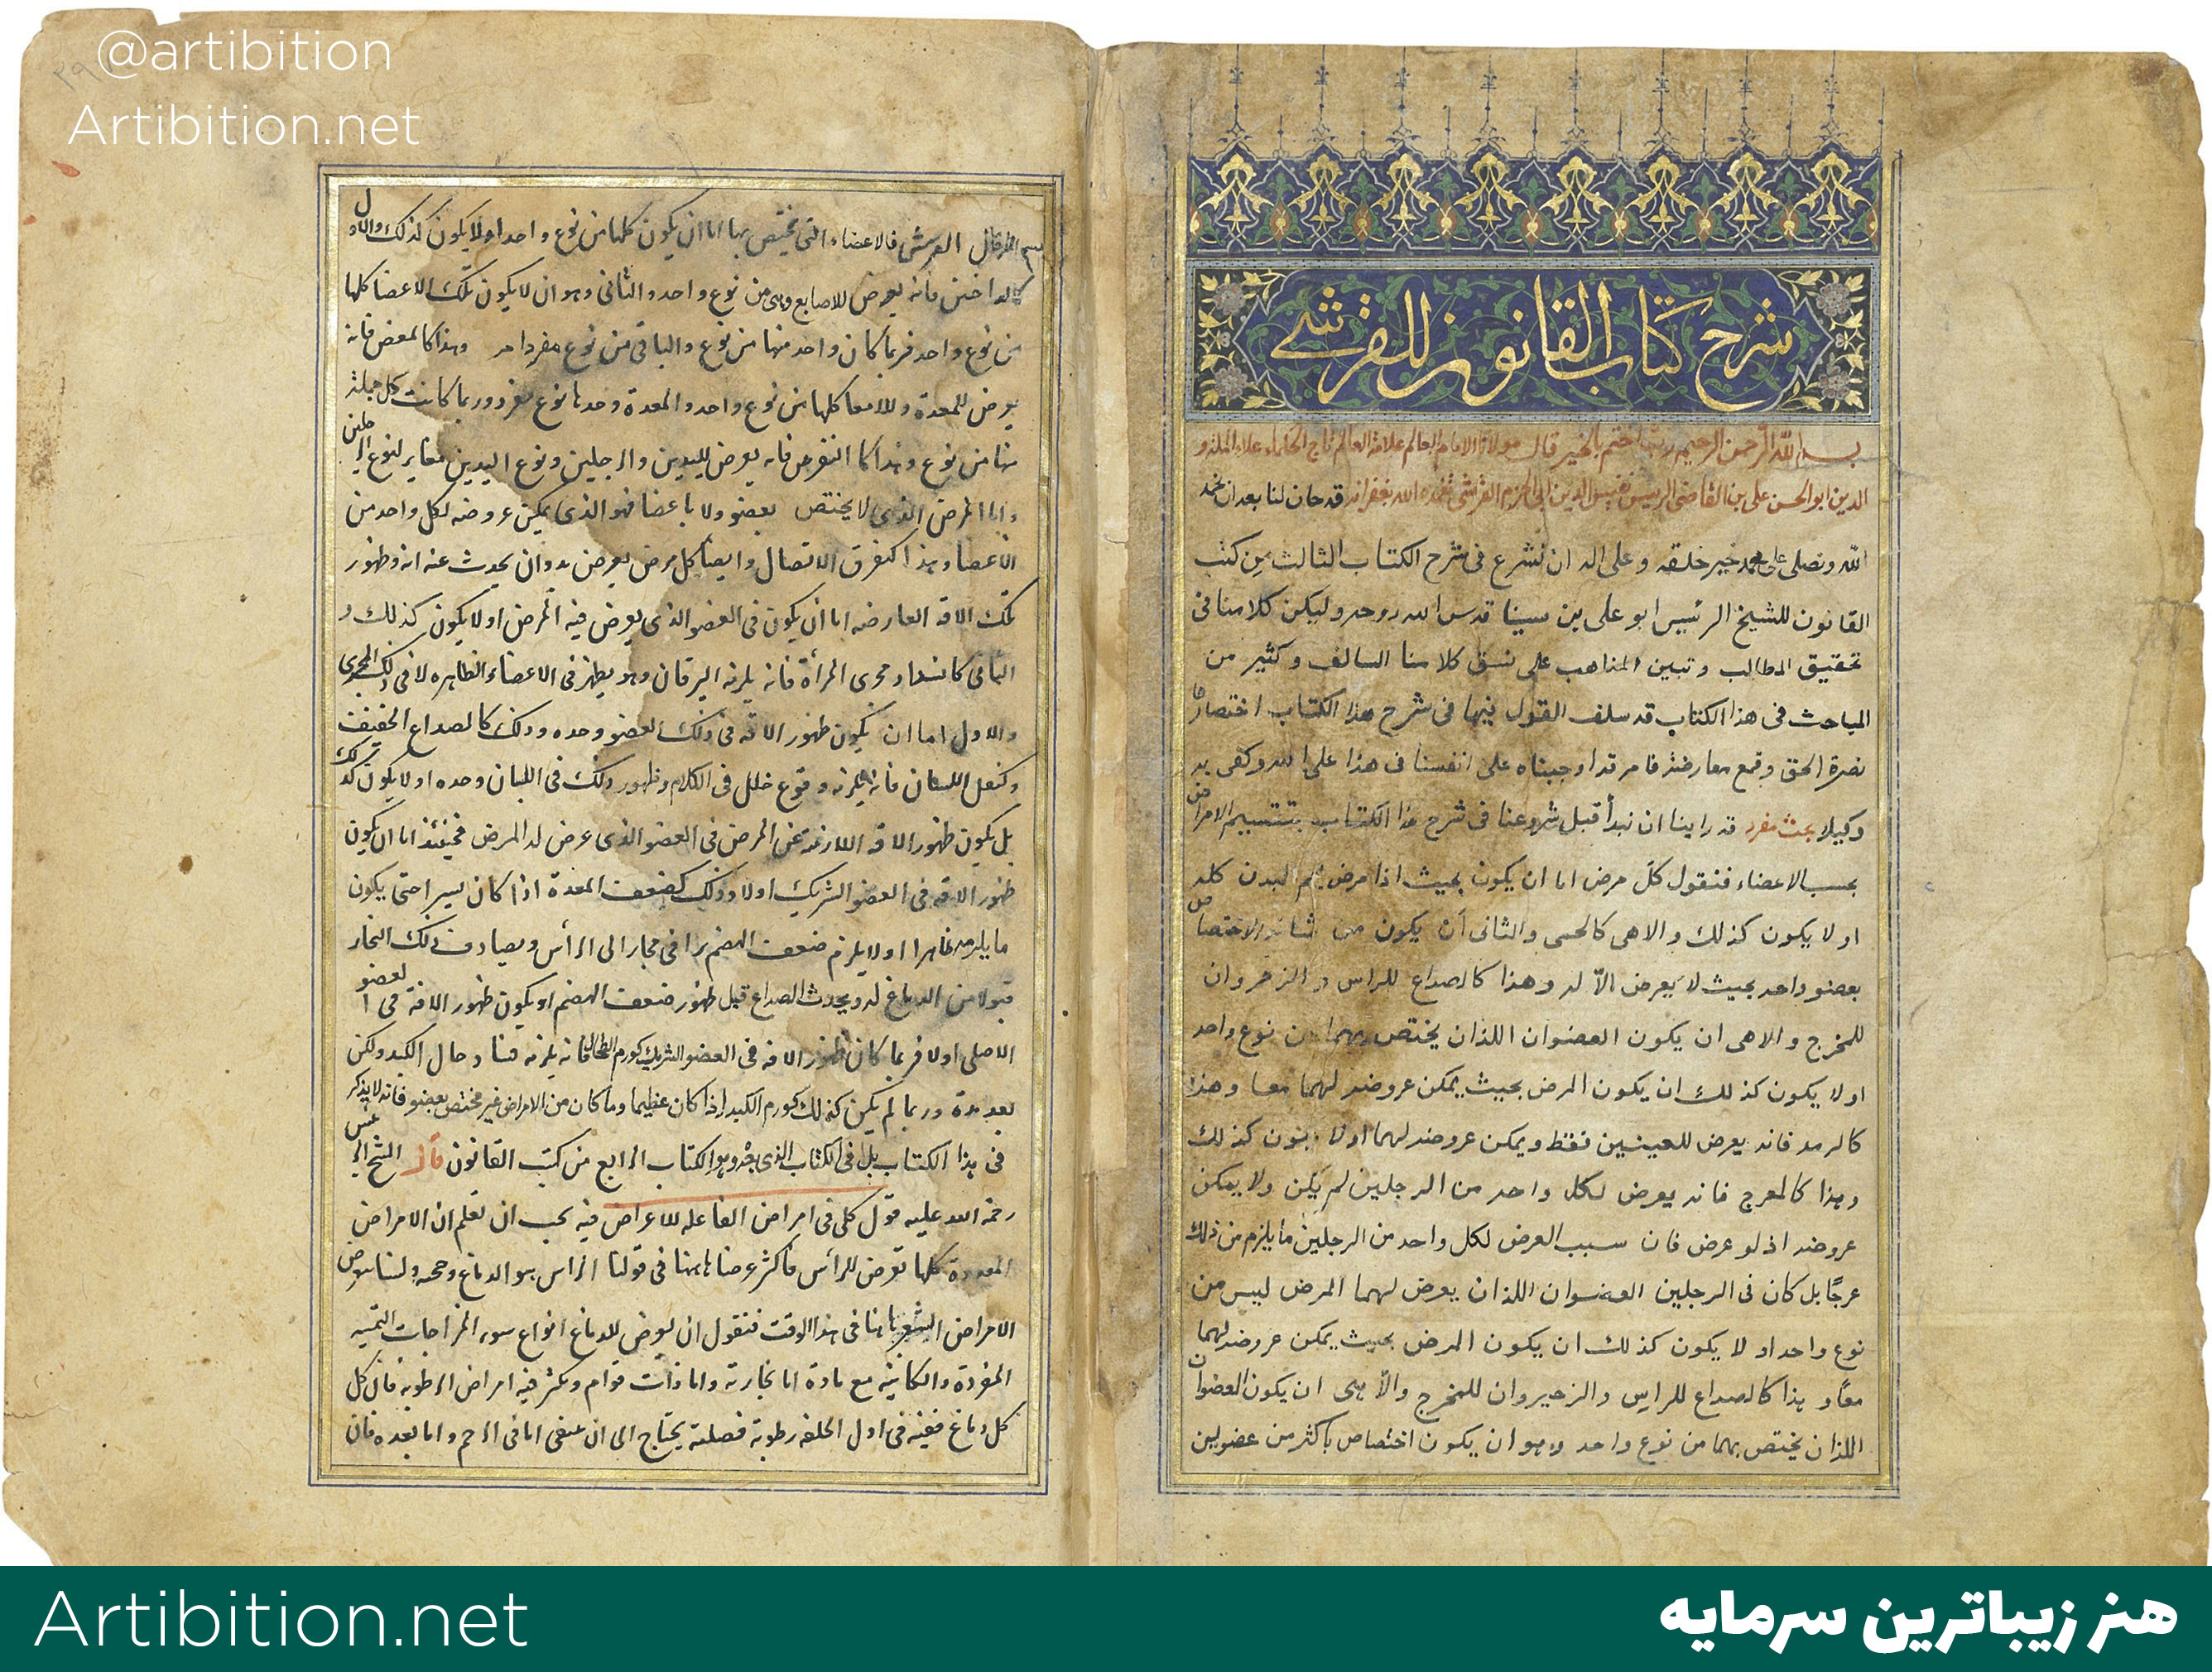 تفسیر کتاب قانون ابن سینا با خط شکسته نستعلیق مطعلق به ایران دوره تیموری قرن 16